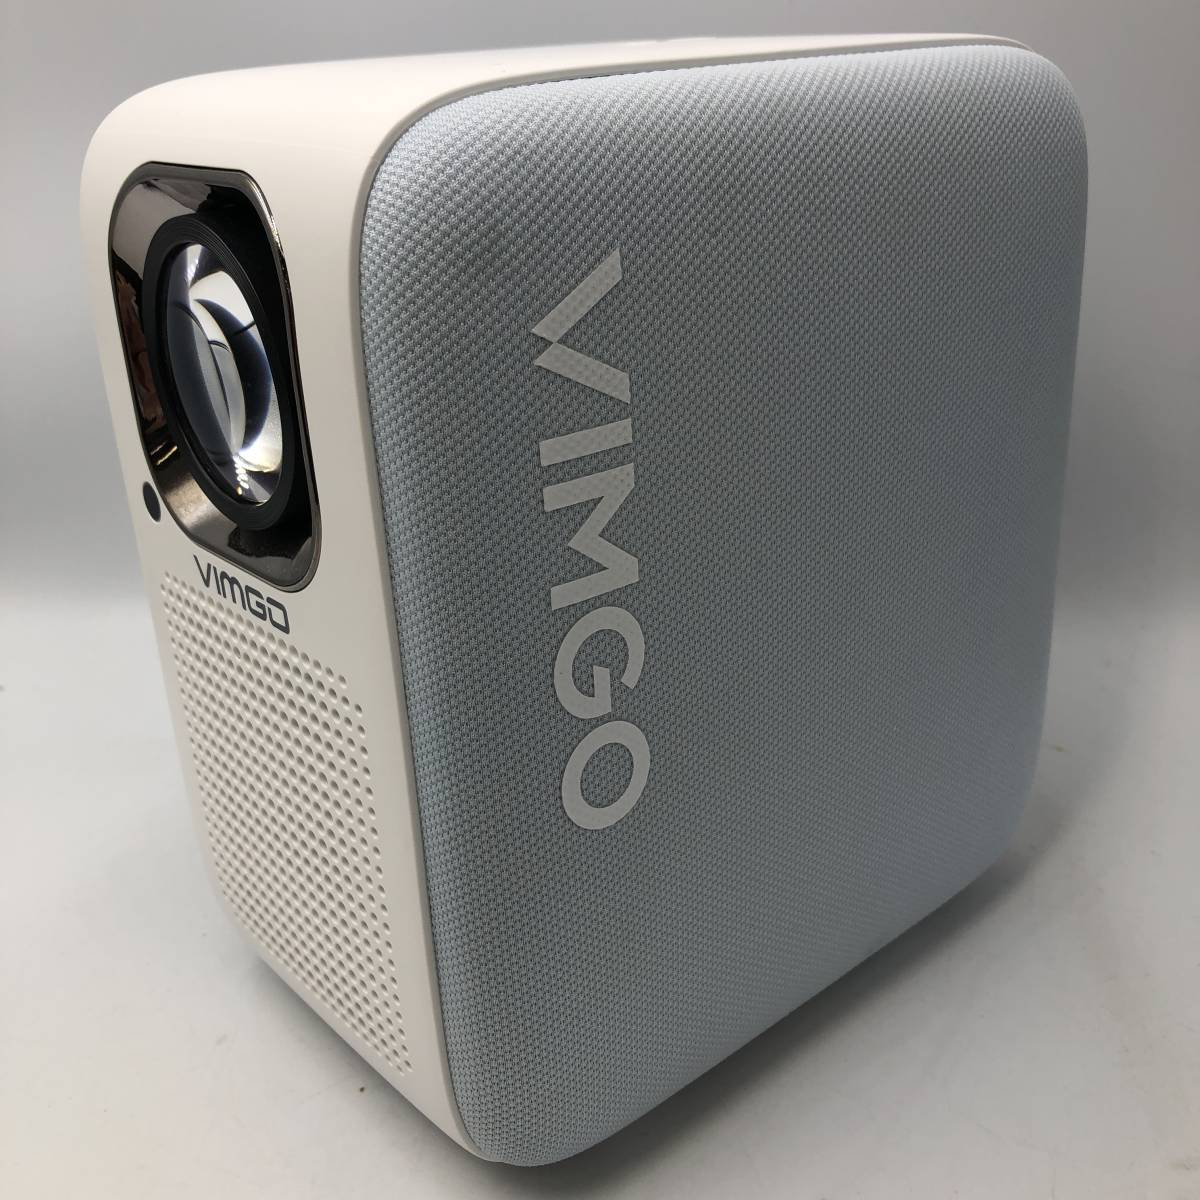 vimgo プロジェクター 4K対応 スマホ対応 日本語取扱い説明書付き